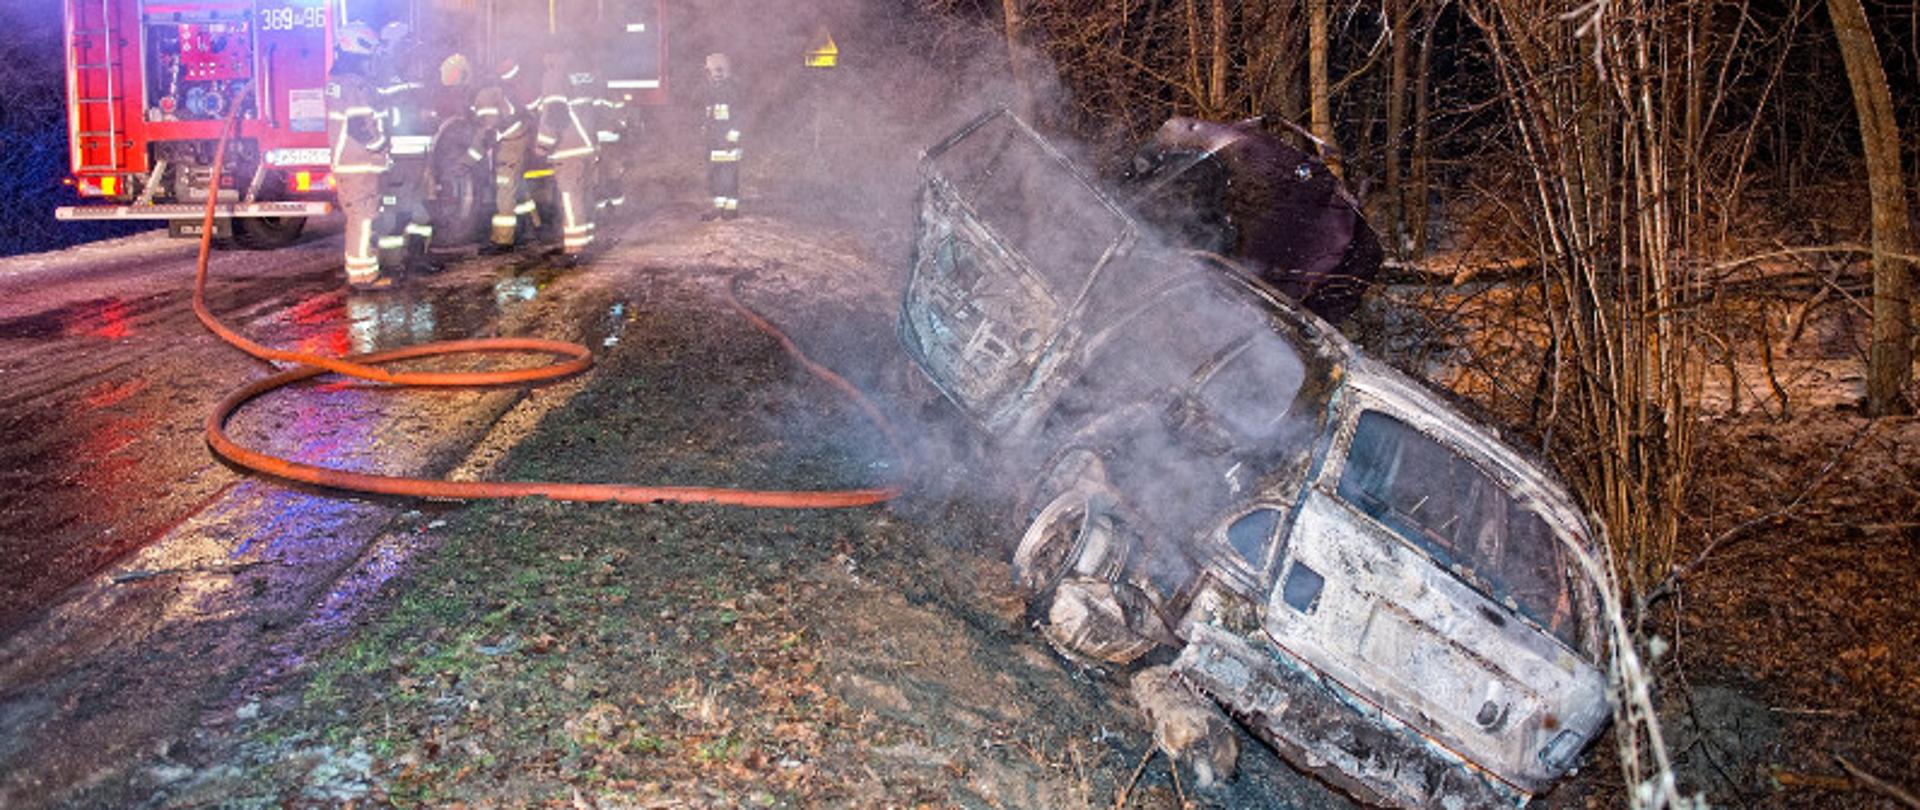 Pożar samochodu osobowego, który znajduje się w rowie obok jezdni. Na zdjęciu spalony wrak pojazdu, w tle strażacy.